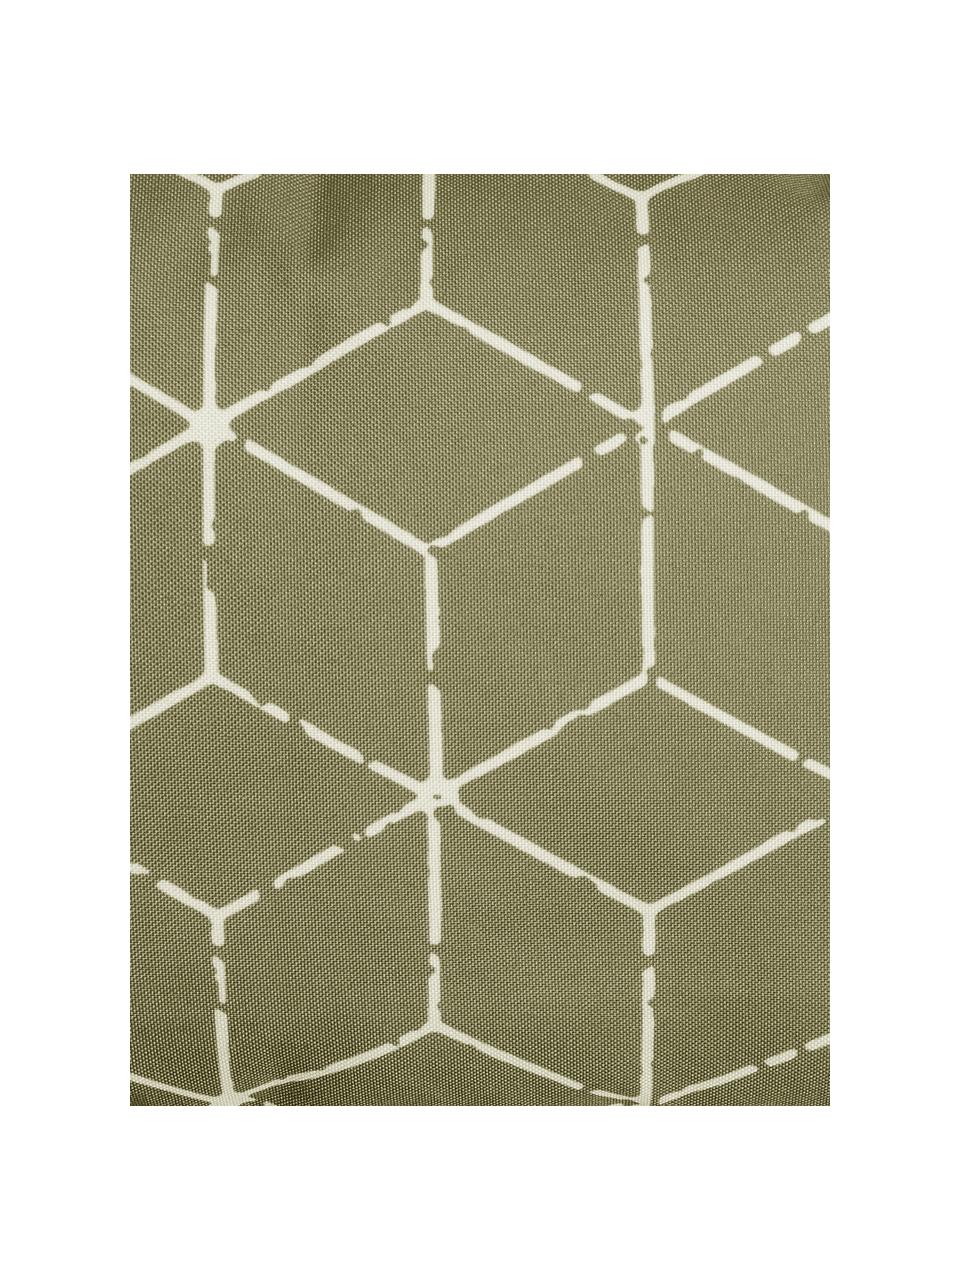 Outdoor-Kissen Cube mit grafischem Muster in Grün/Weiss, mit Inlett, 100% Polyester, Taupe, Weiss, 30 x 50 cm